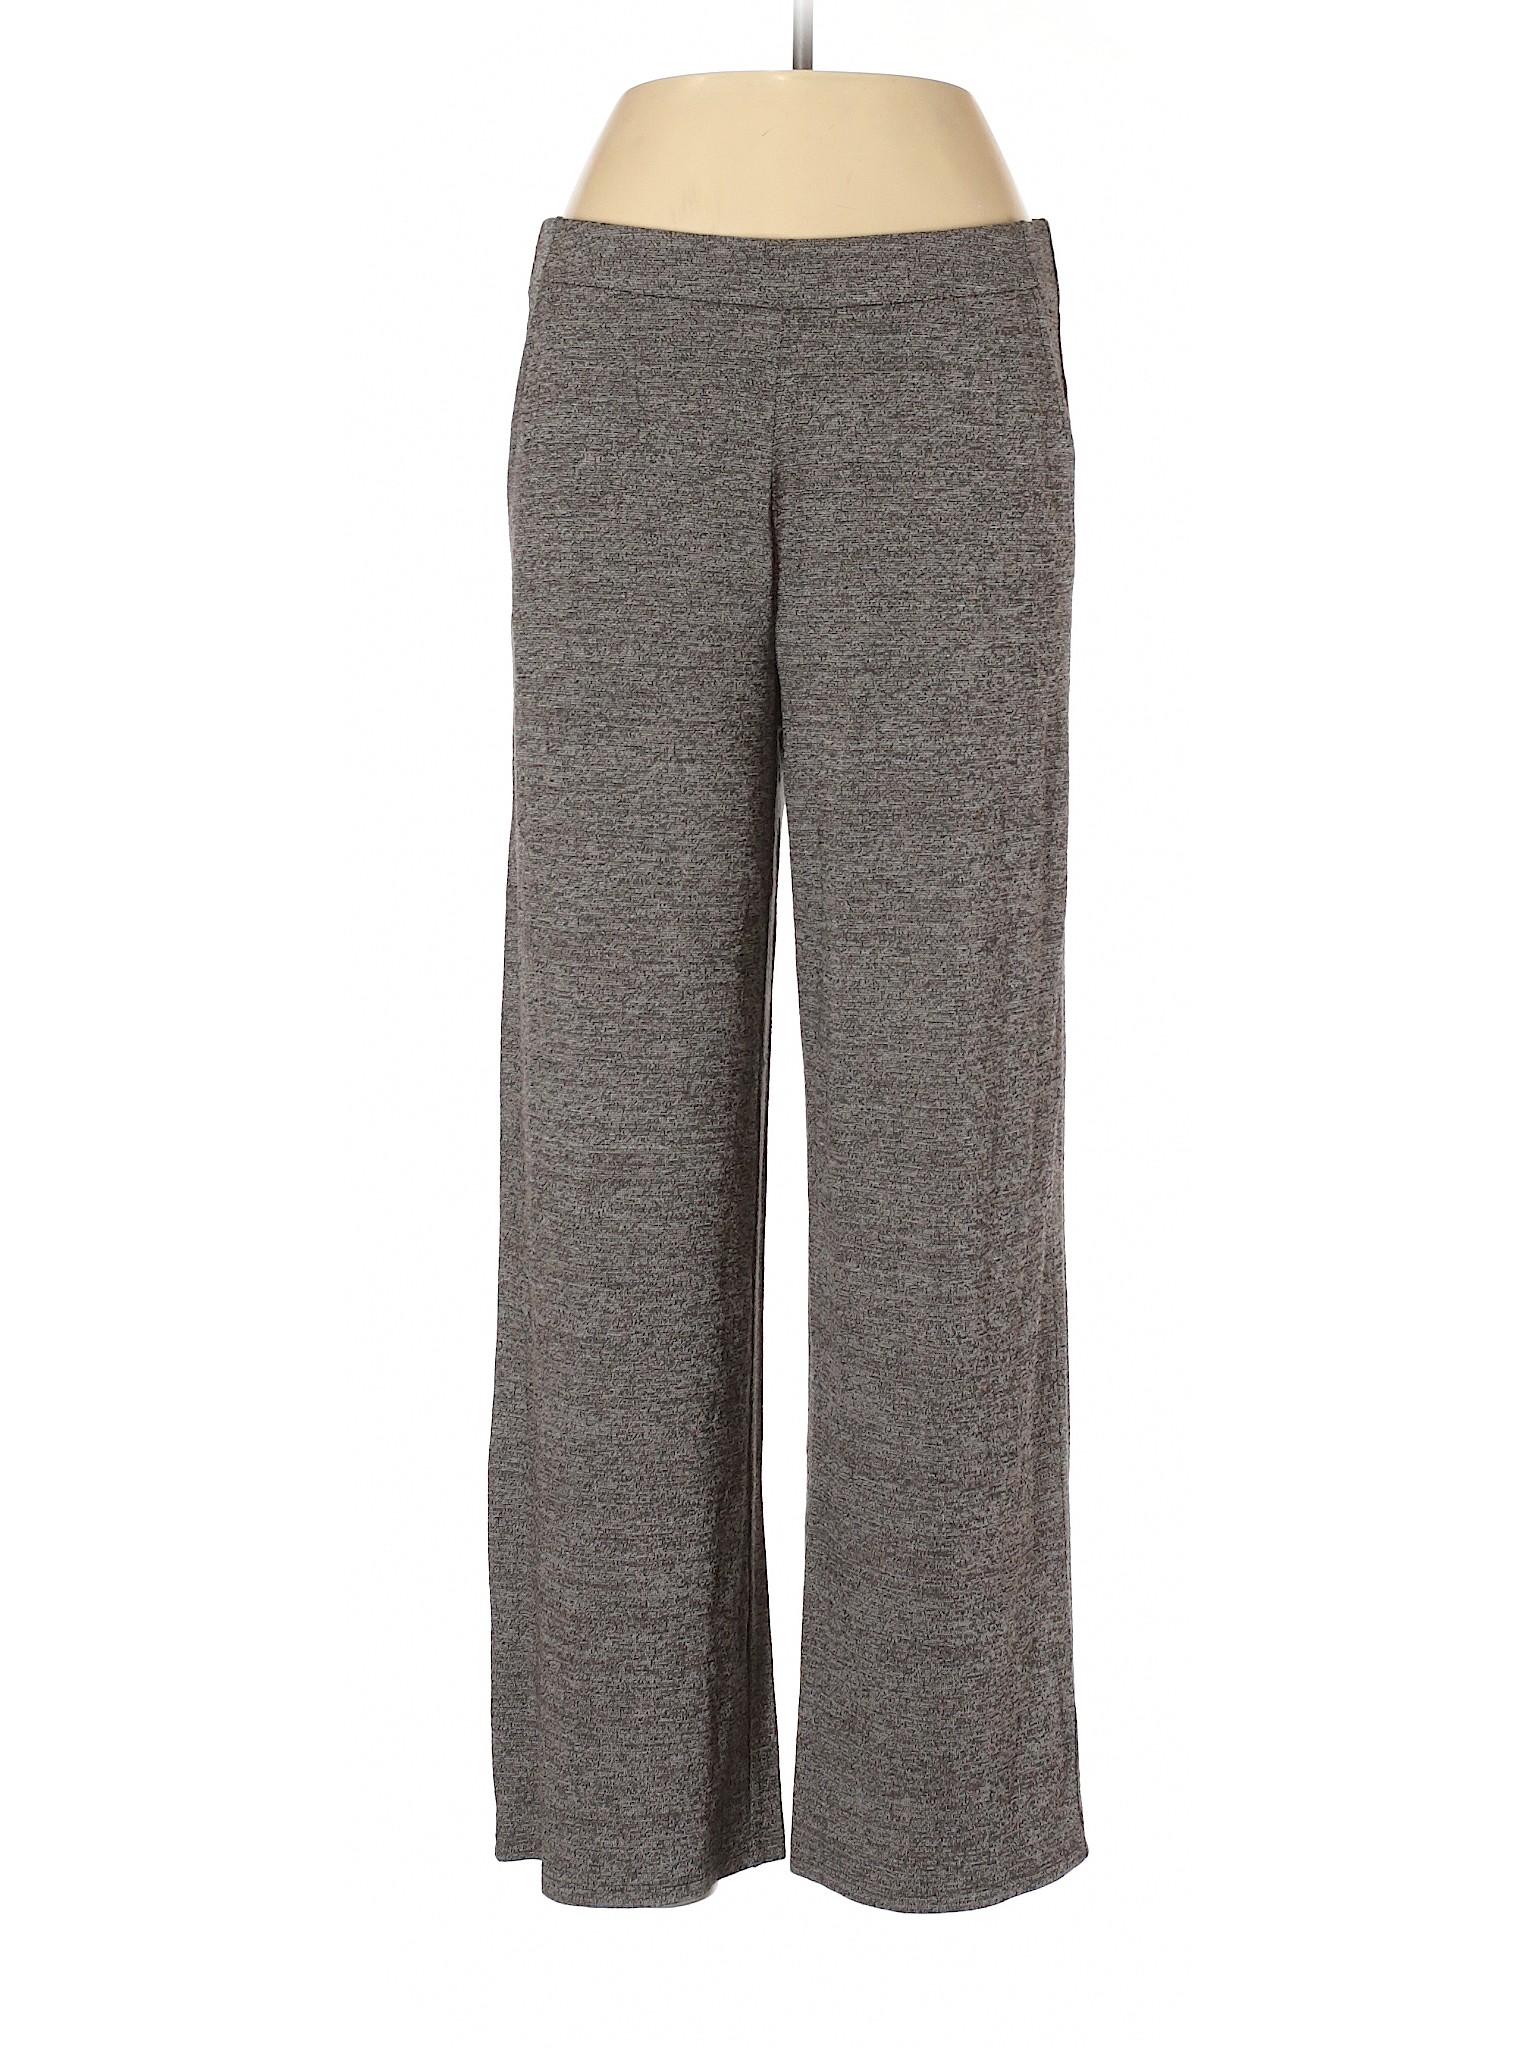 J.Jill Women Gray Casual Pants M Petites | eBay